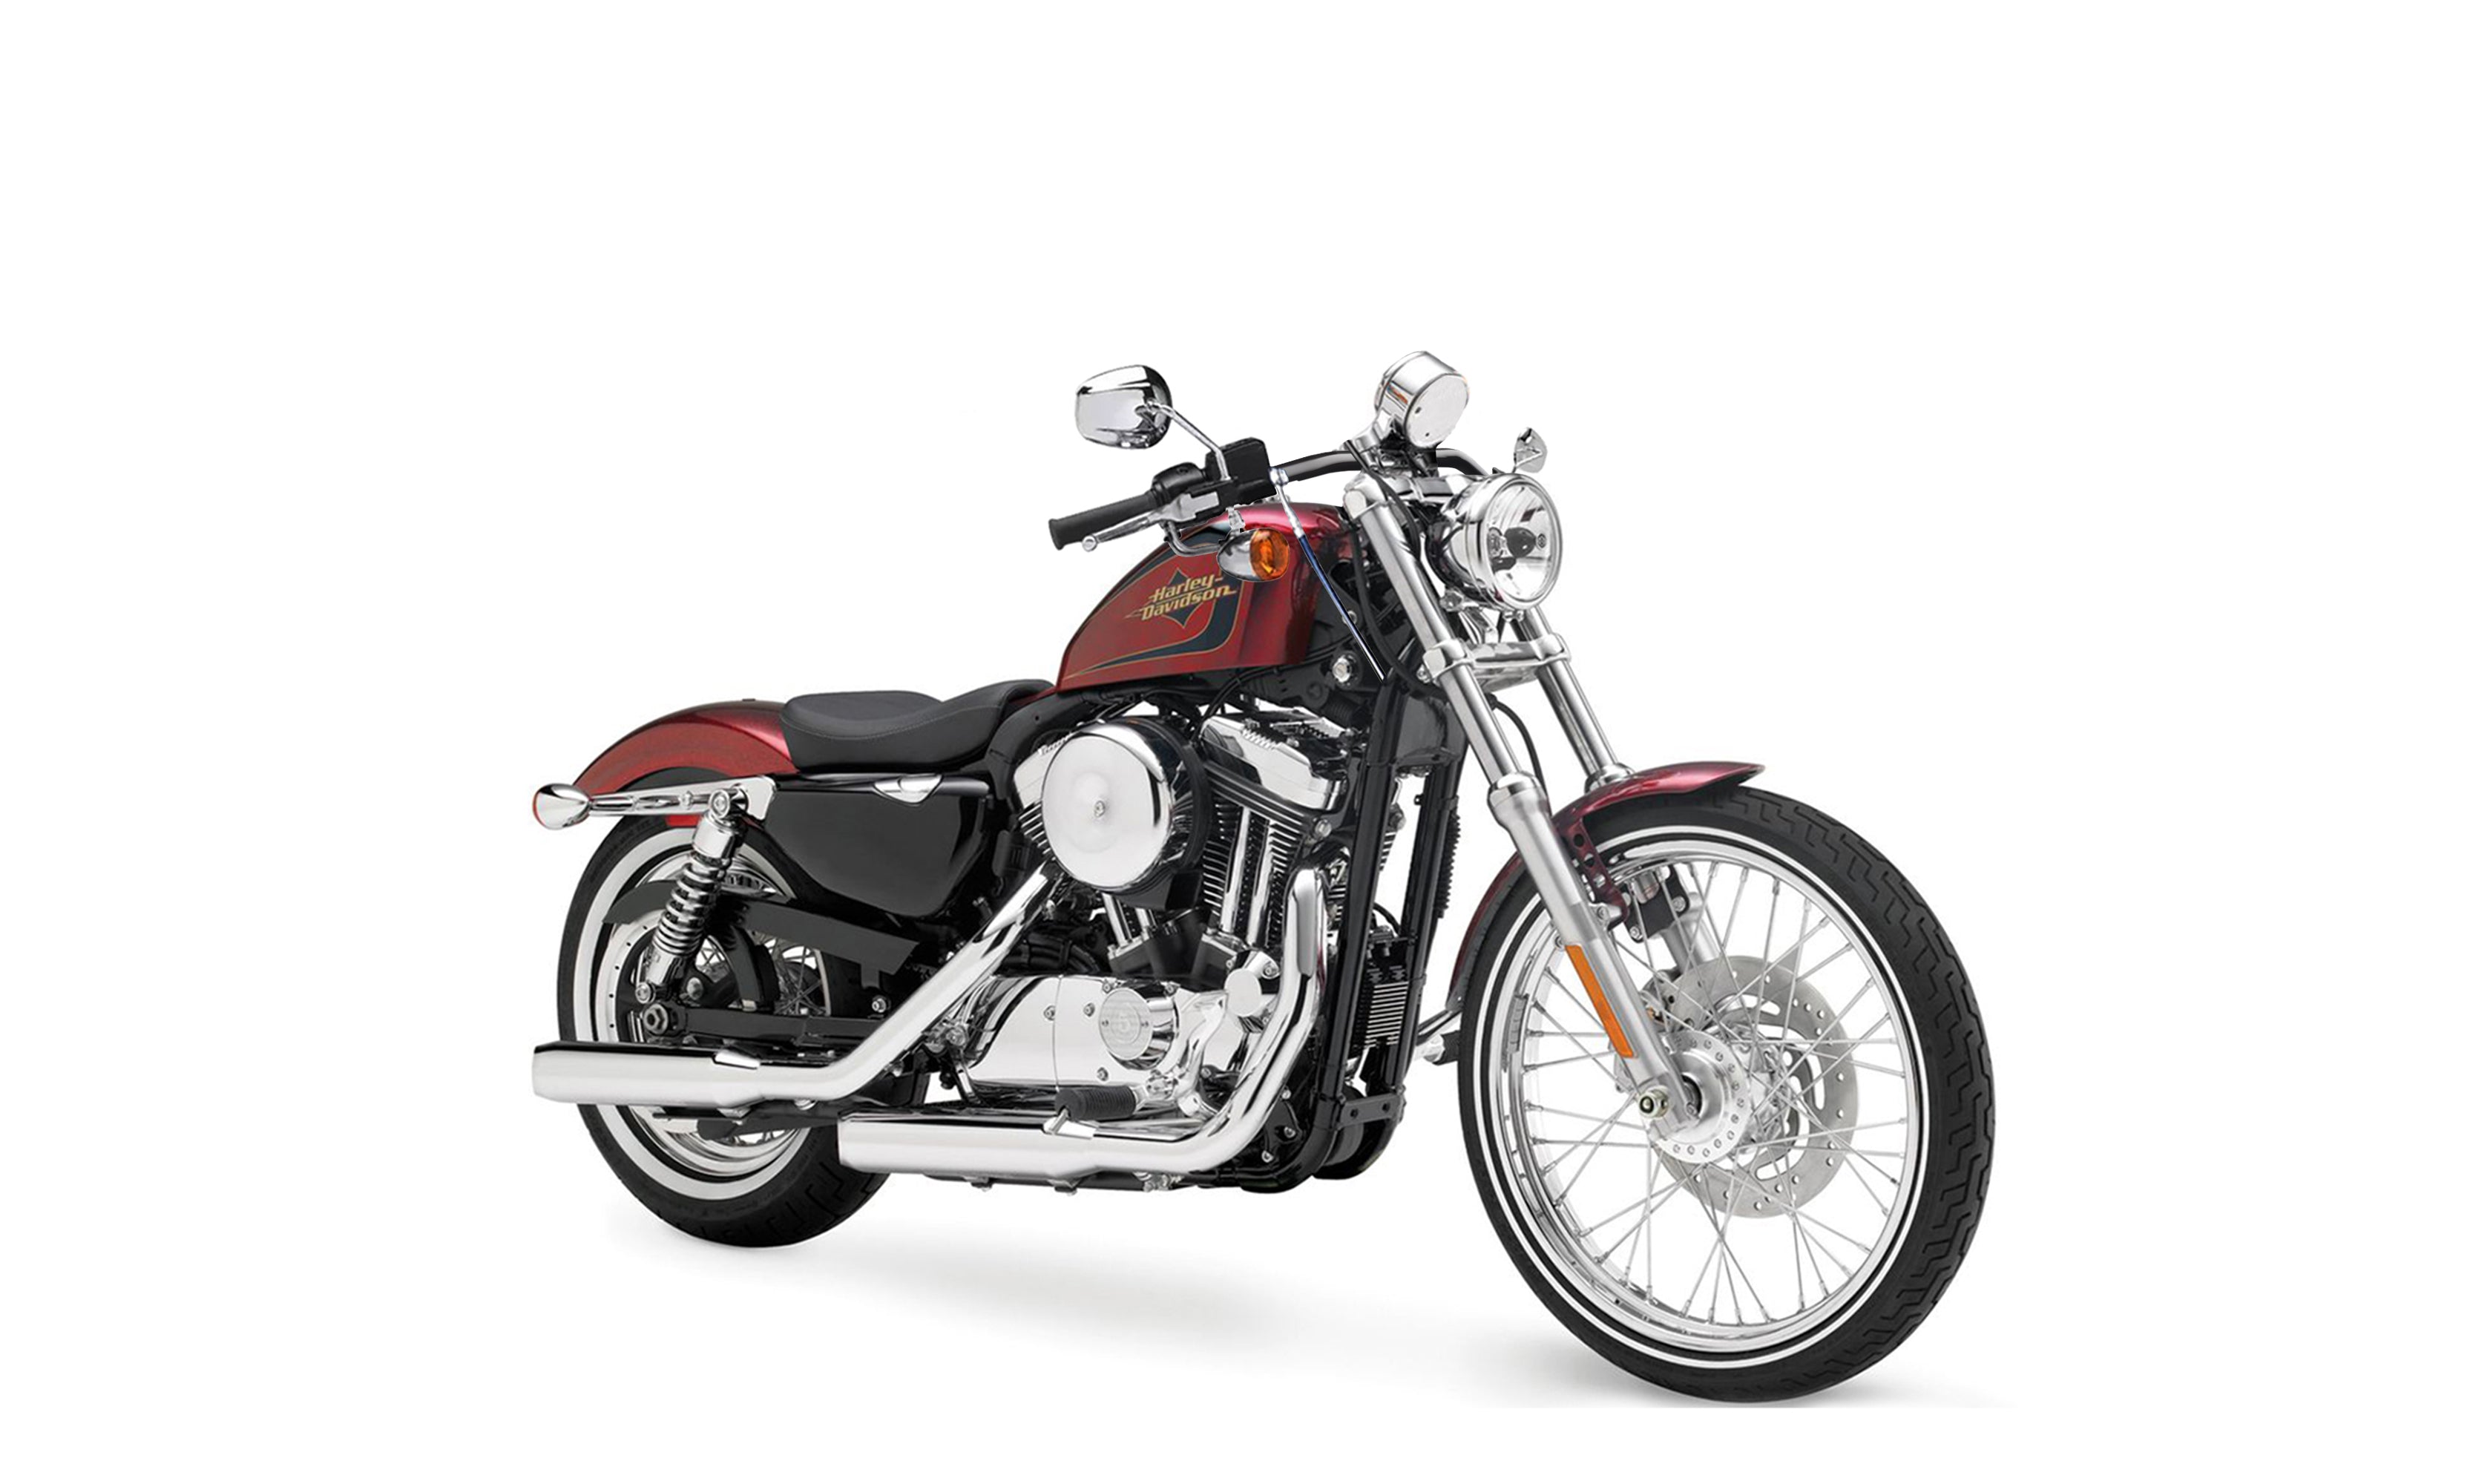 Viking Iron Born Drag Handlebar For Harley Sportster Seventy Two Gloss Black Bag on Bike View @expand